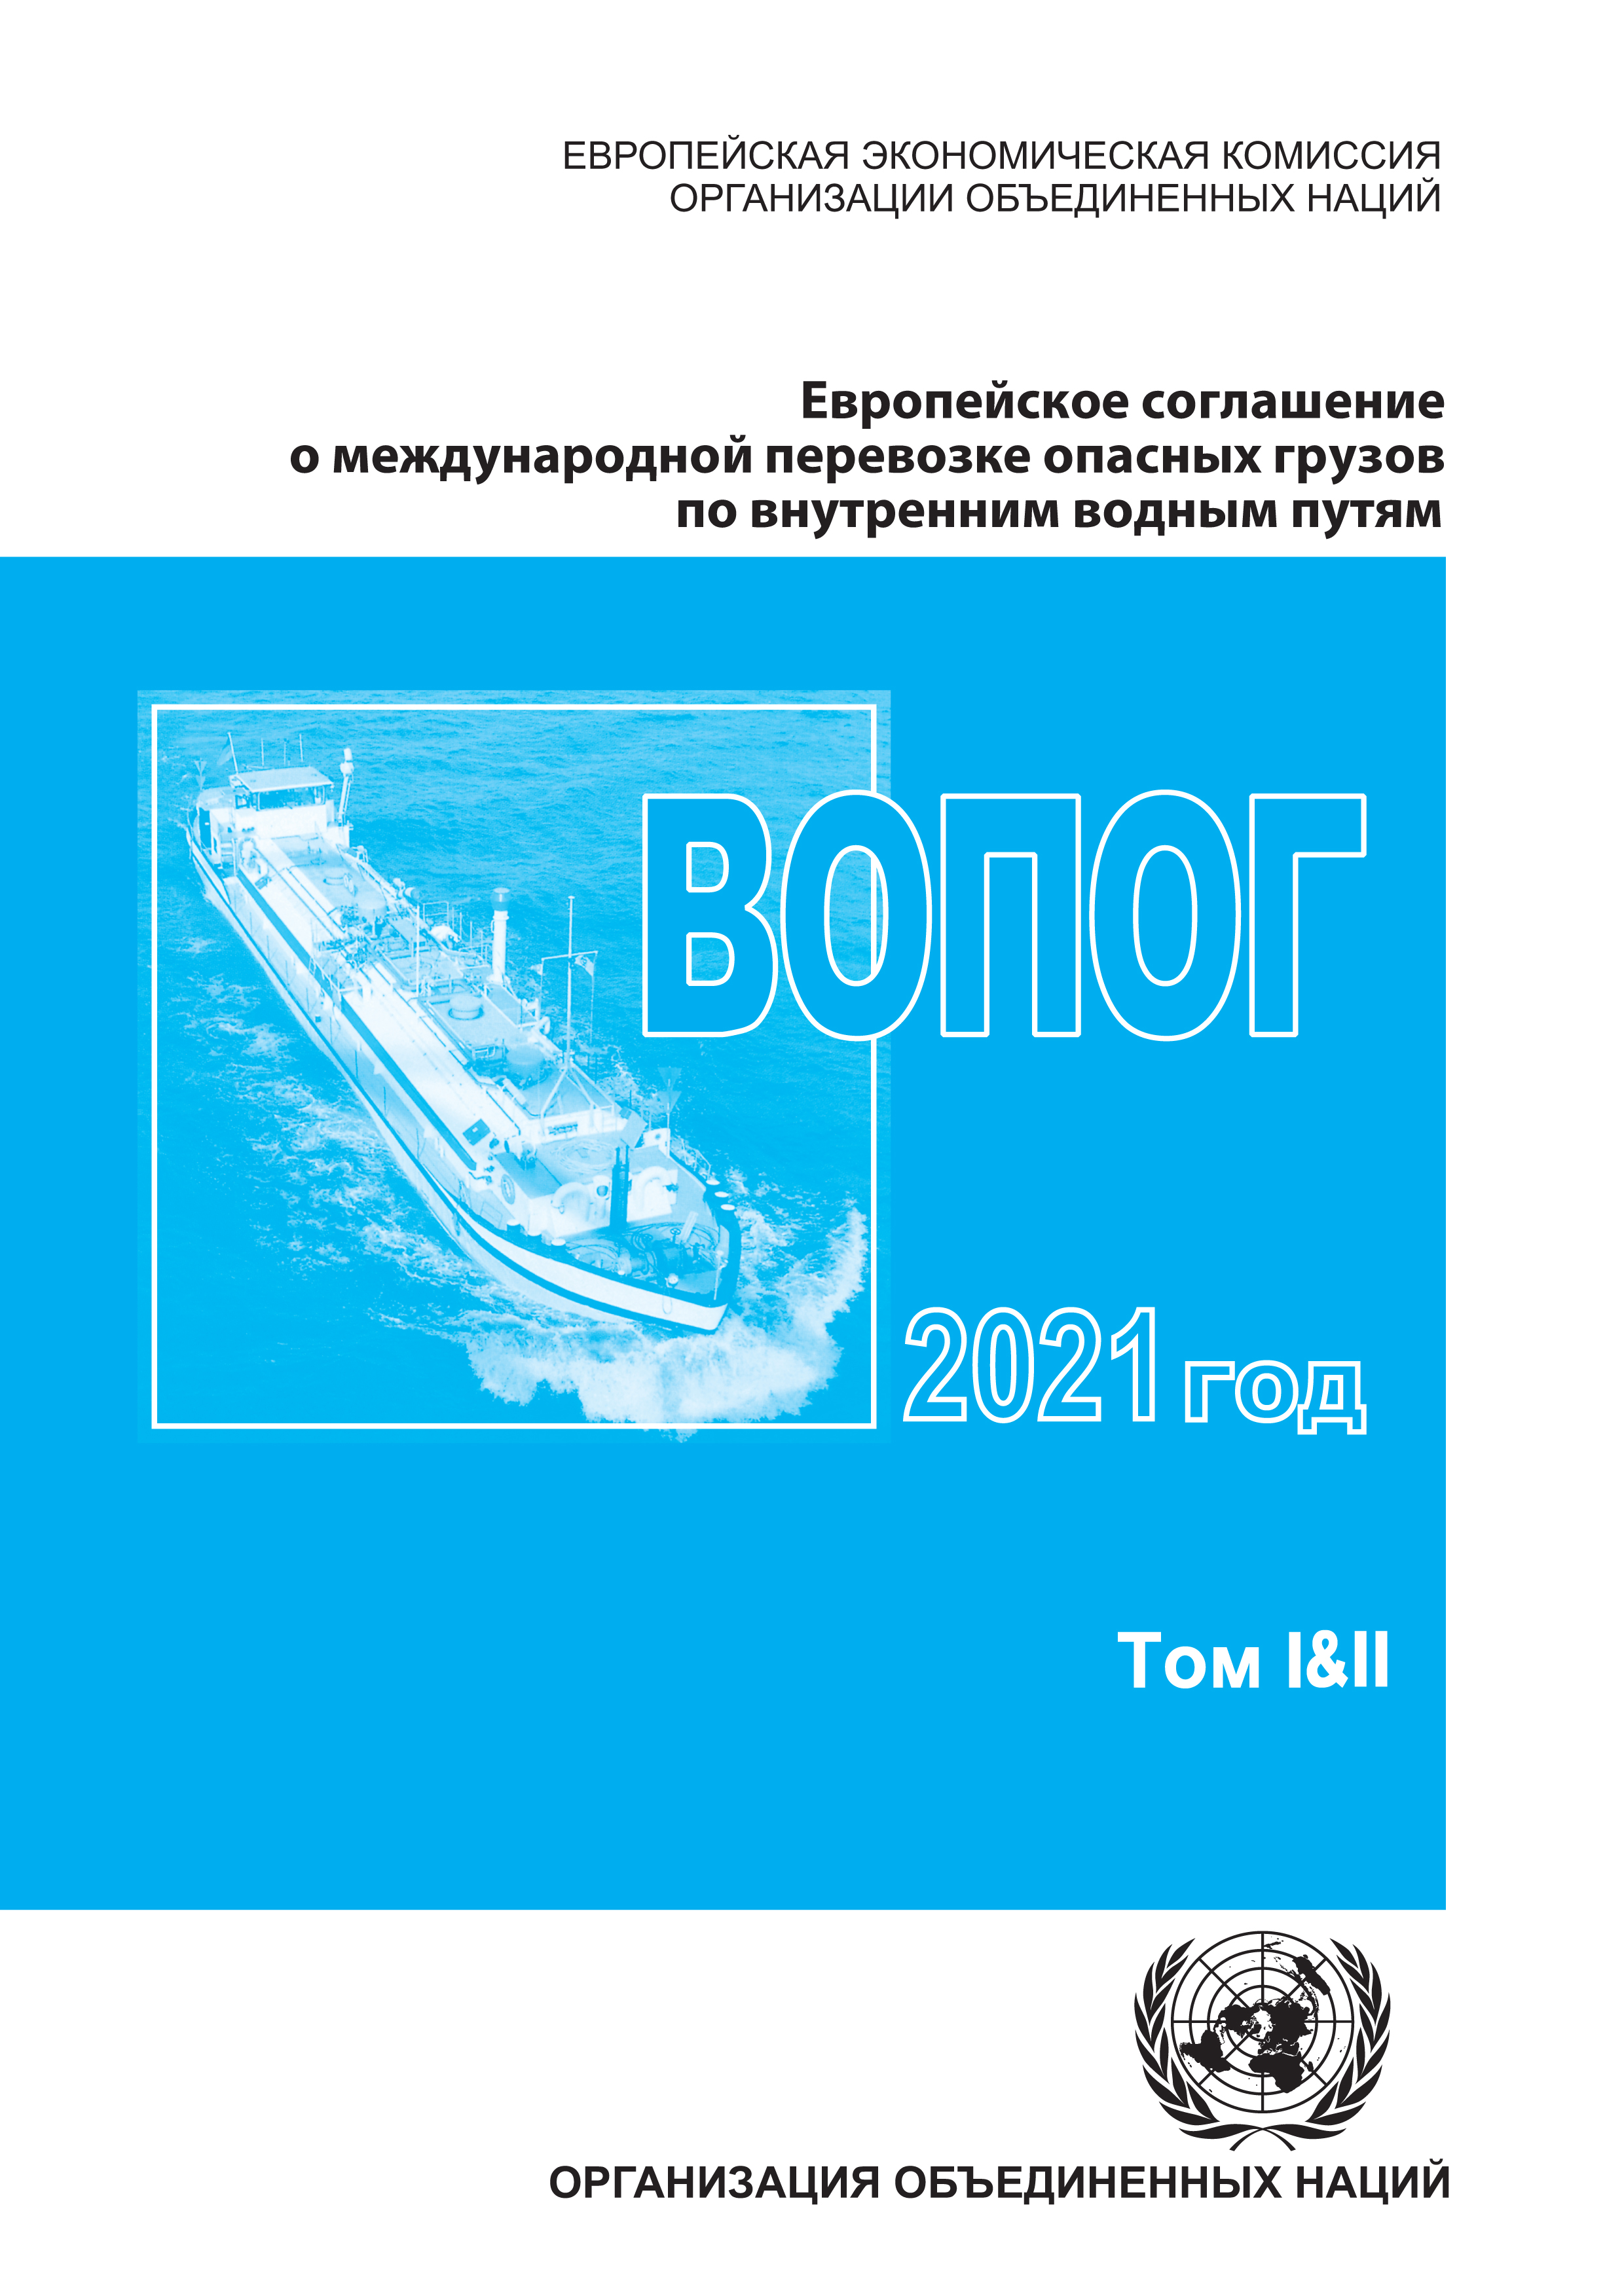 image of Европейское соглашение о международной перевозке опасных грузов по внутренним водным путям (ВОПОГ) 2021